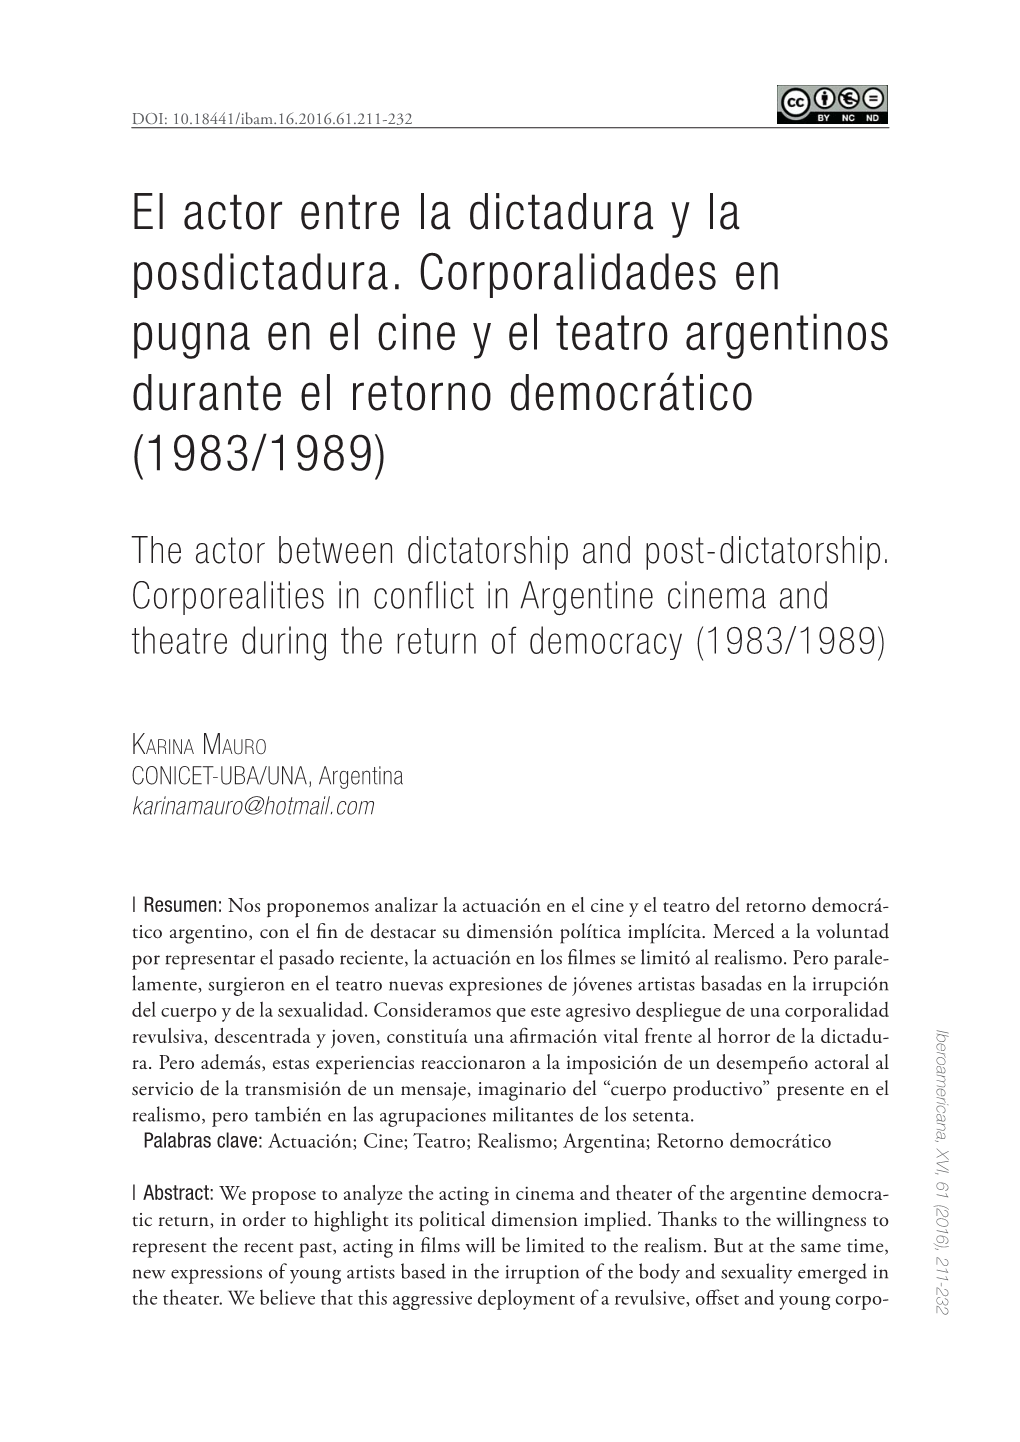 El Actor Entre La Dictadura Y La Posdictadura. Corporalidades En Pugna En El Cine Y El Teatro Argentinos Durante El Retorno Democrático (1983/1989)